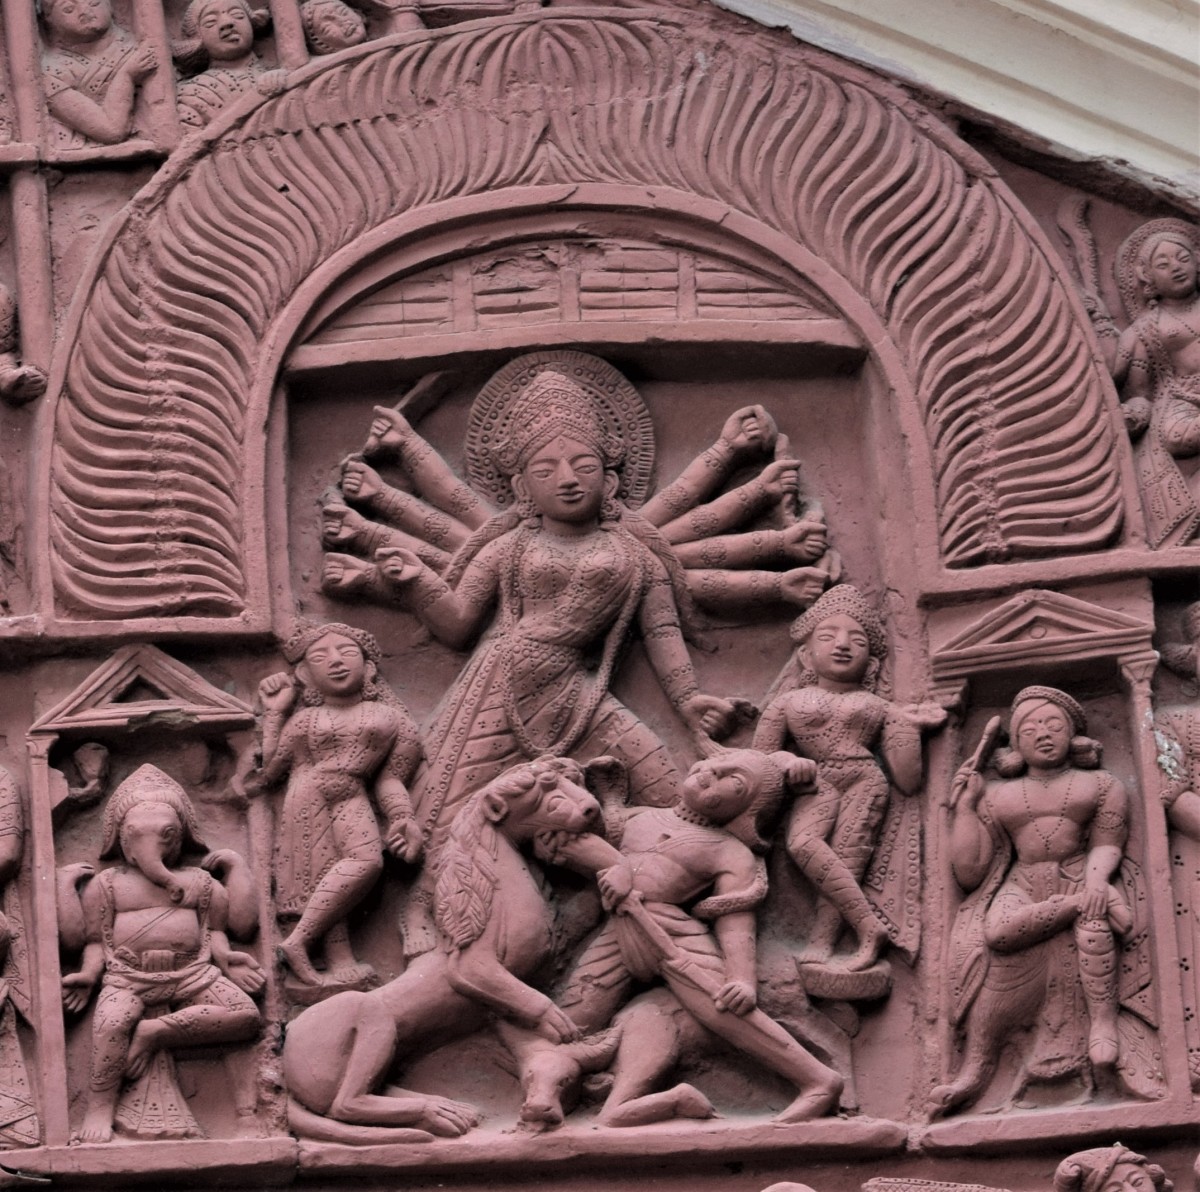 Goiddess Durga with 10 arms; terracotta; Lakshmi Janardan temple, Ilambazar, district Birbhum